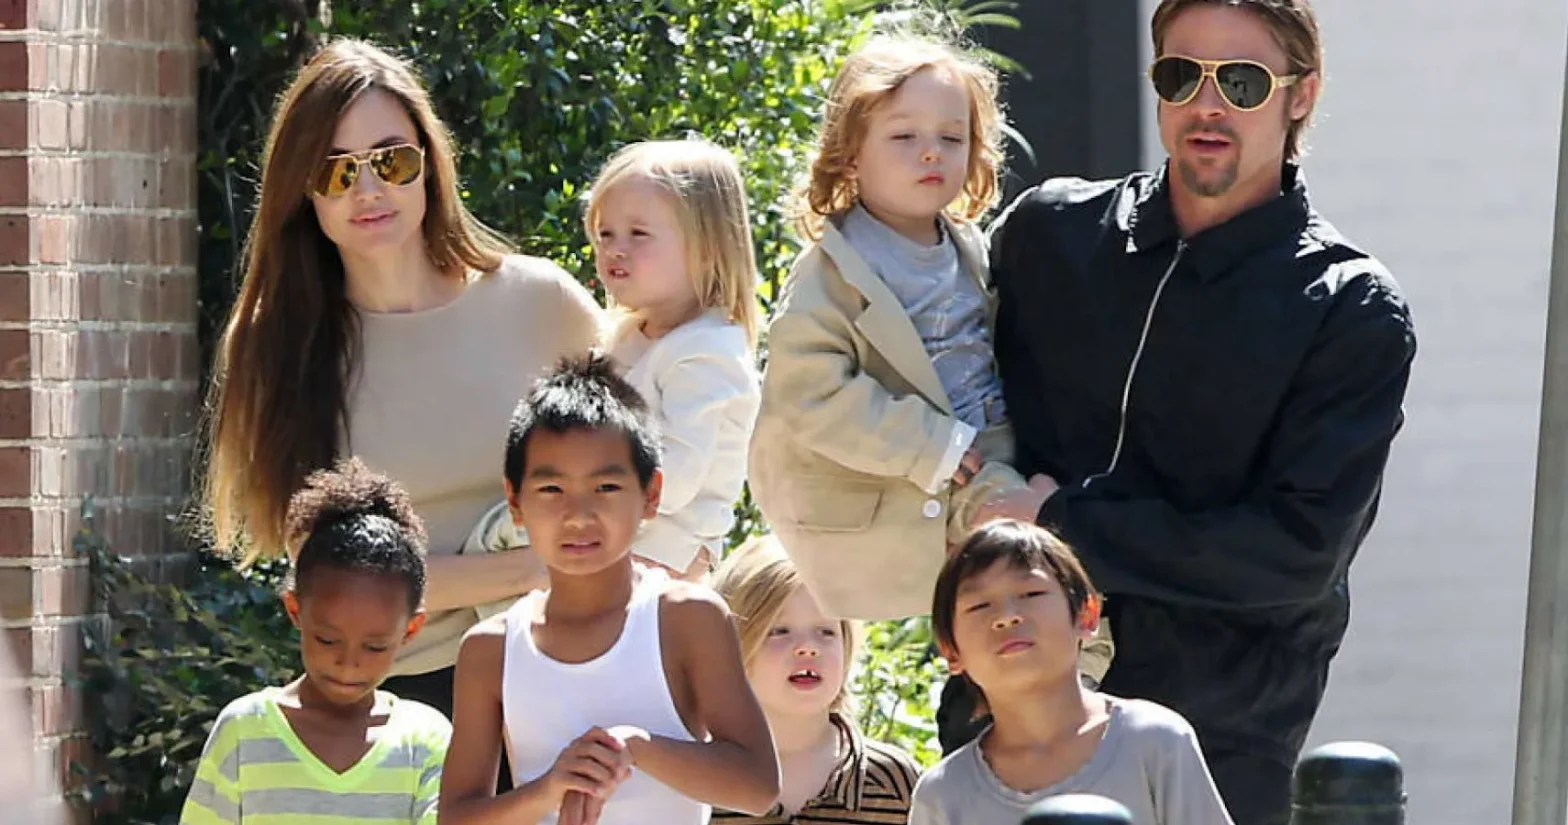 "Brad Pitt estranguló a uno de nuestros hijos": dice Angelina Jolie a la corte